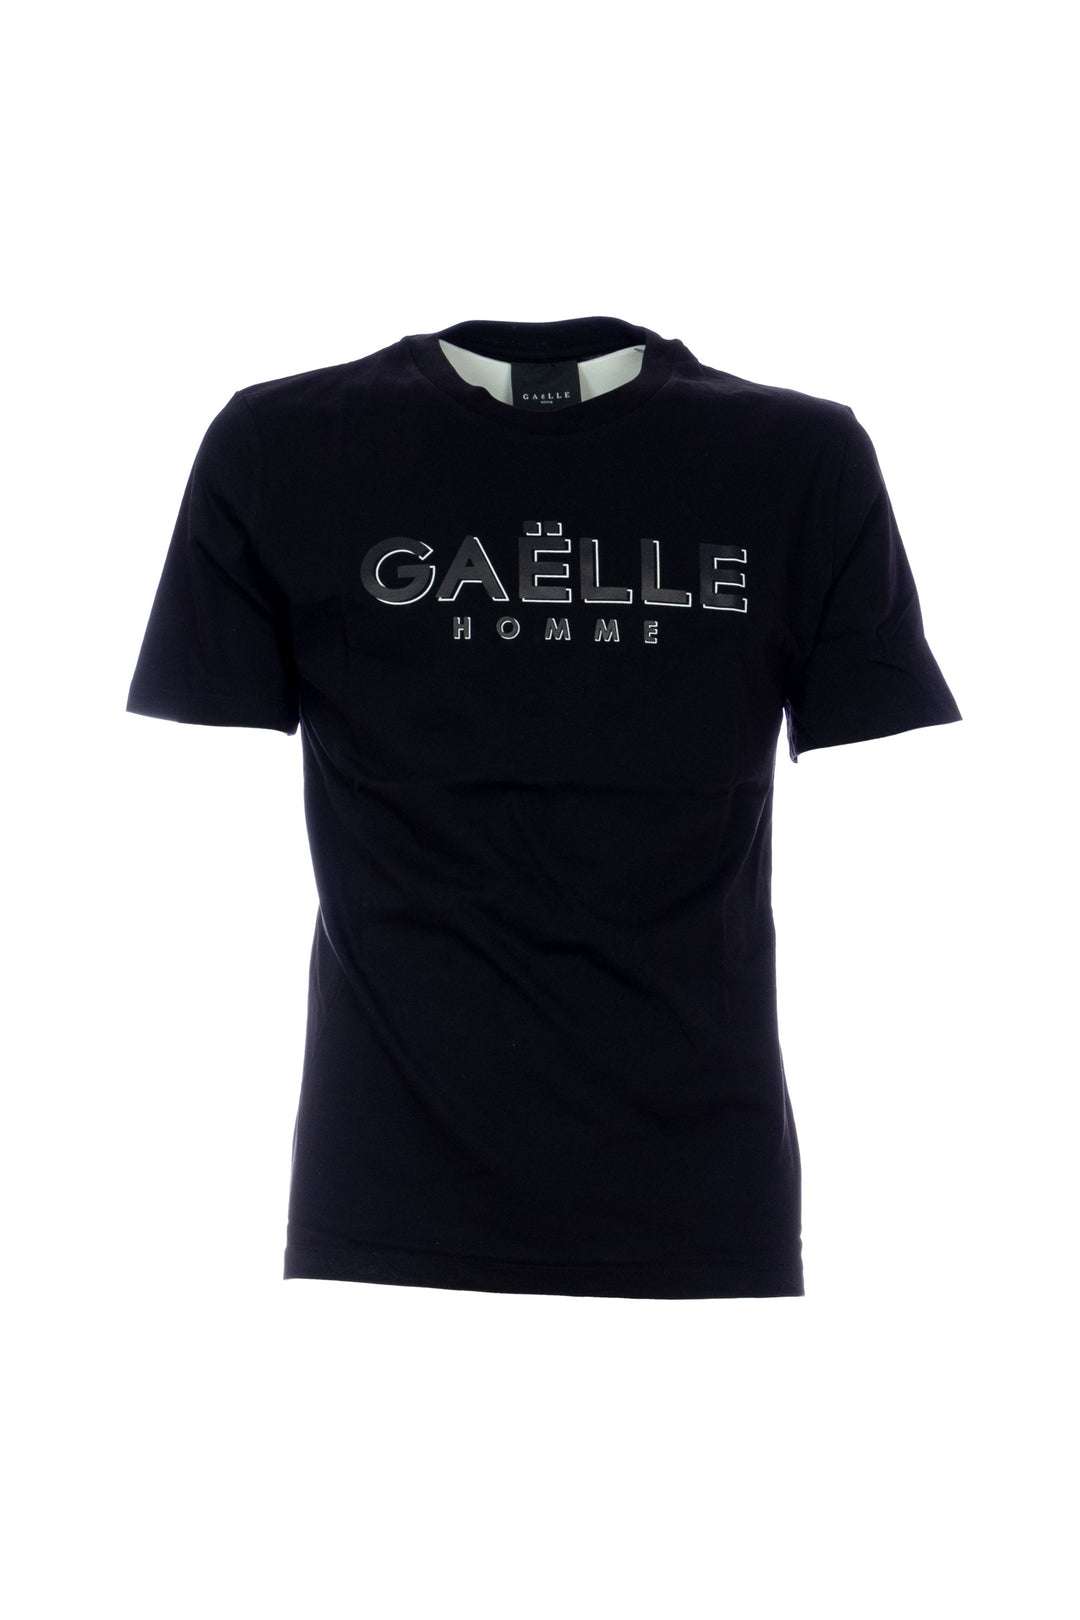 GAELLE T-shirt nera in jersey di cotone con logo stampato - Mancinelli 1954